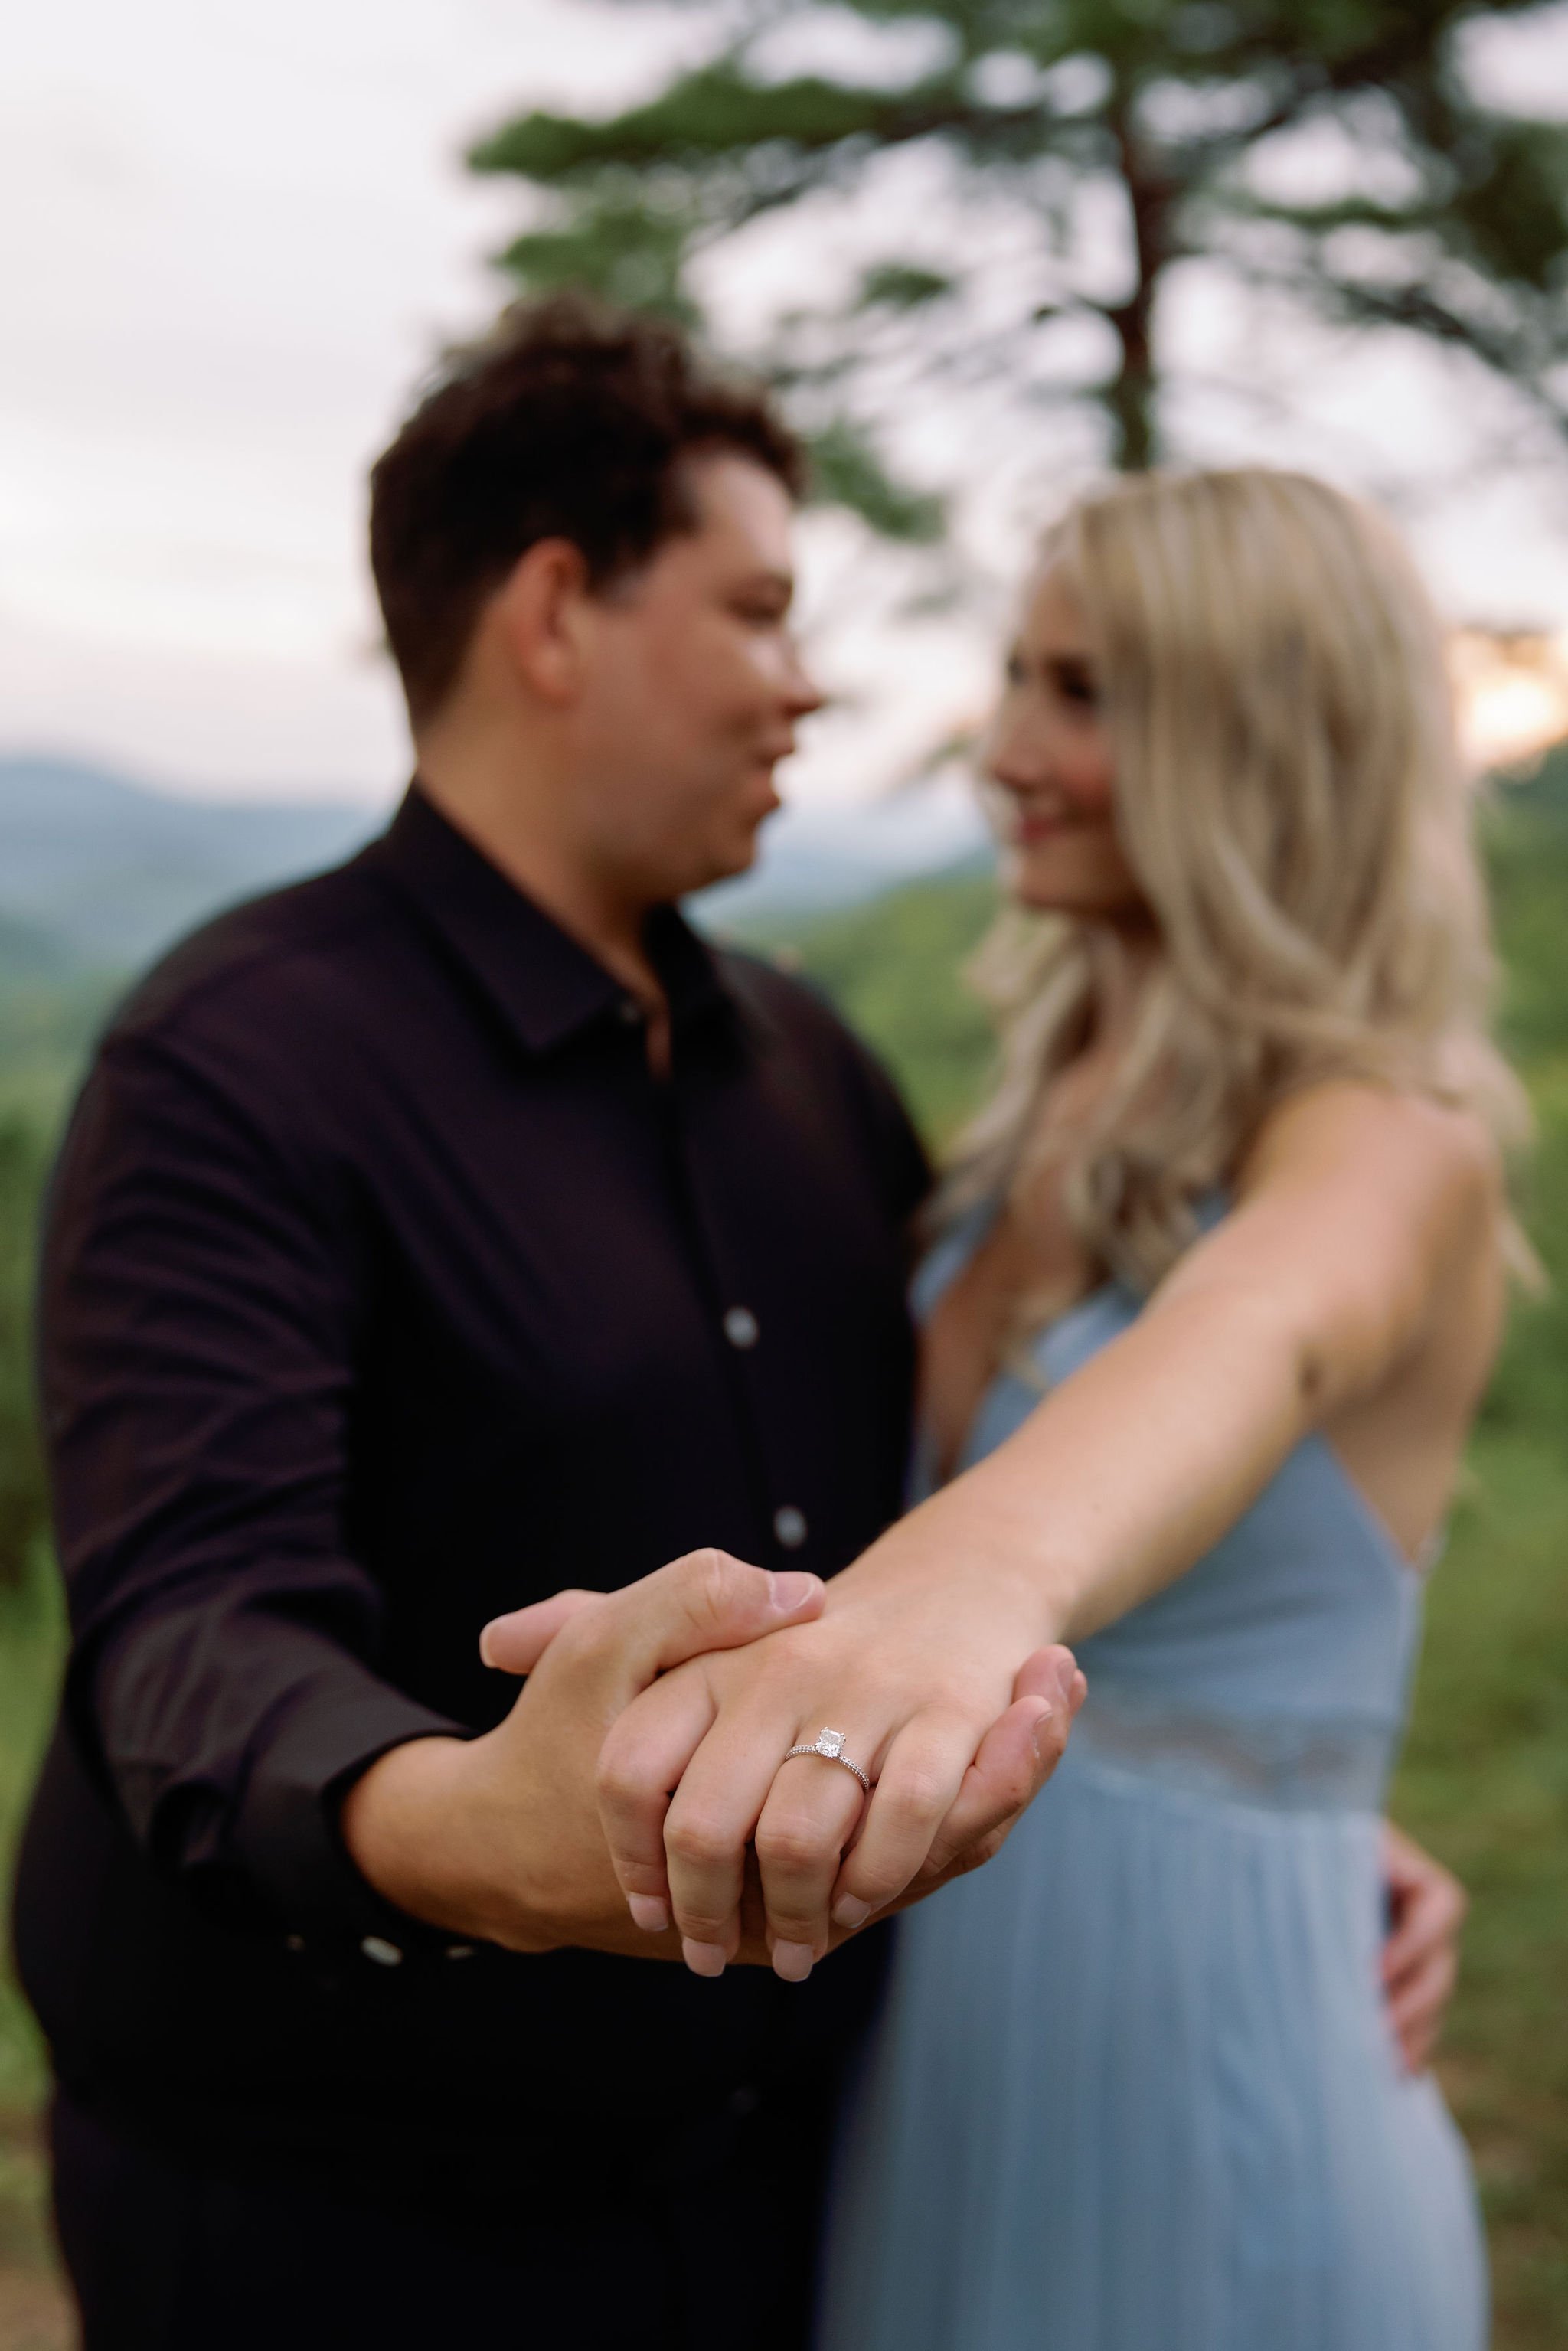 Engagement-Photo-Poses-With-Gatlinburg-Photographer-engagement-ring-shot